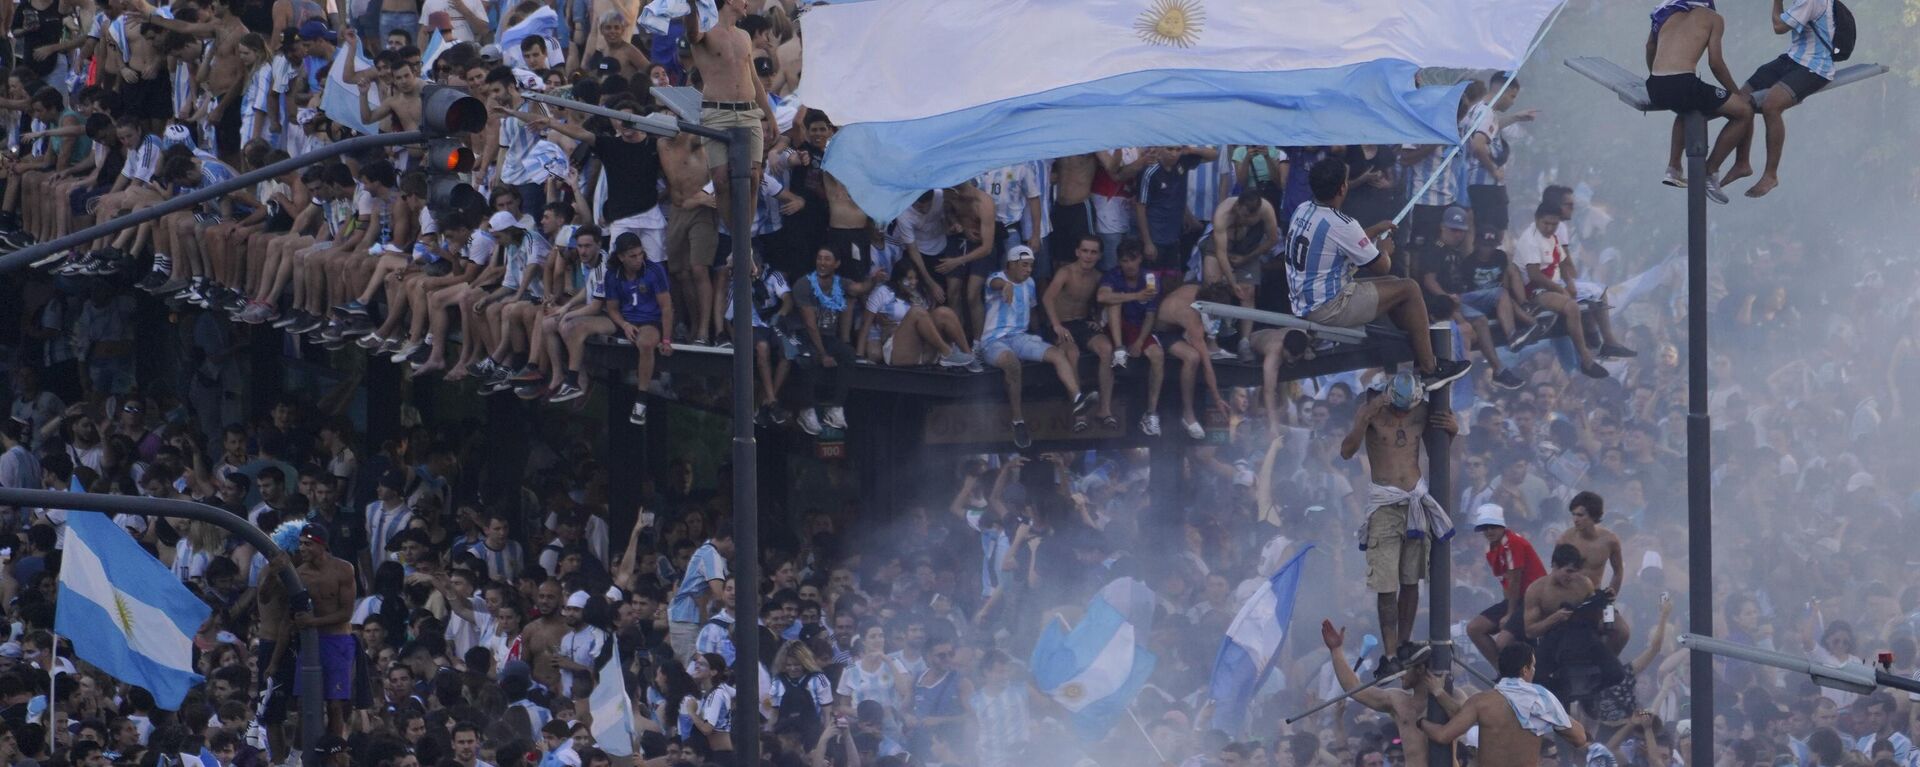 Аргентински навијачи славе победу тима на Светском првенству у Буенос Ајресу 2022. - Sputnik Србија, 1920, 20.12.2022